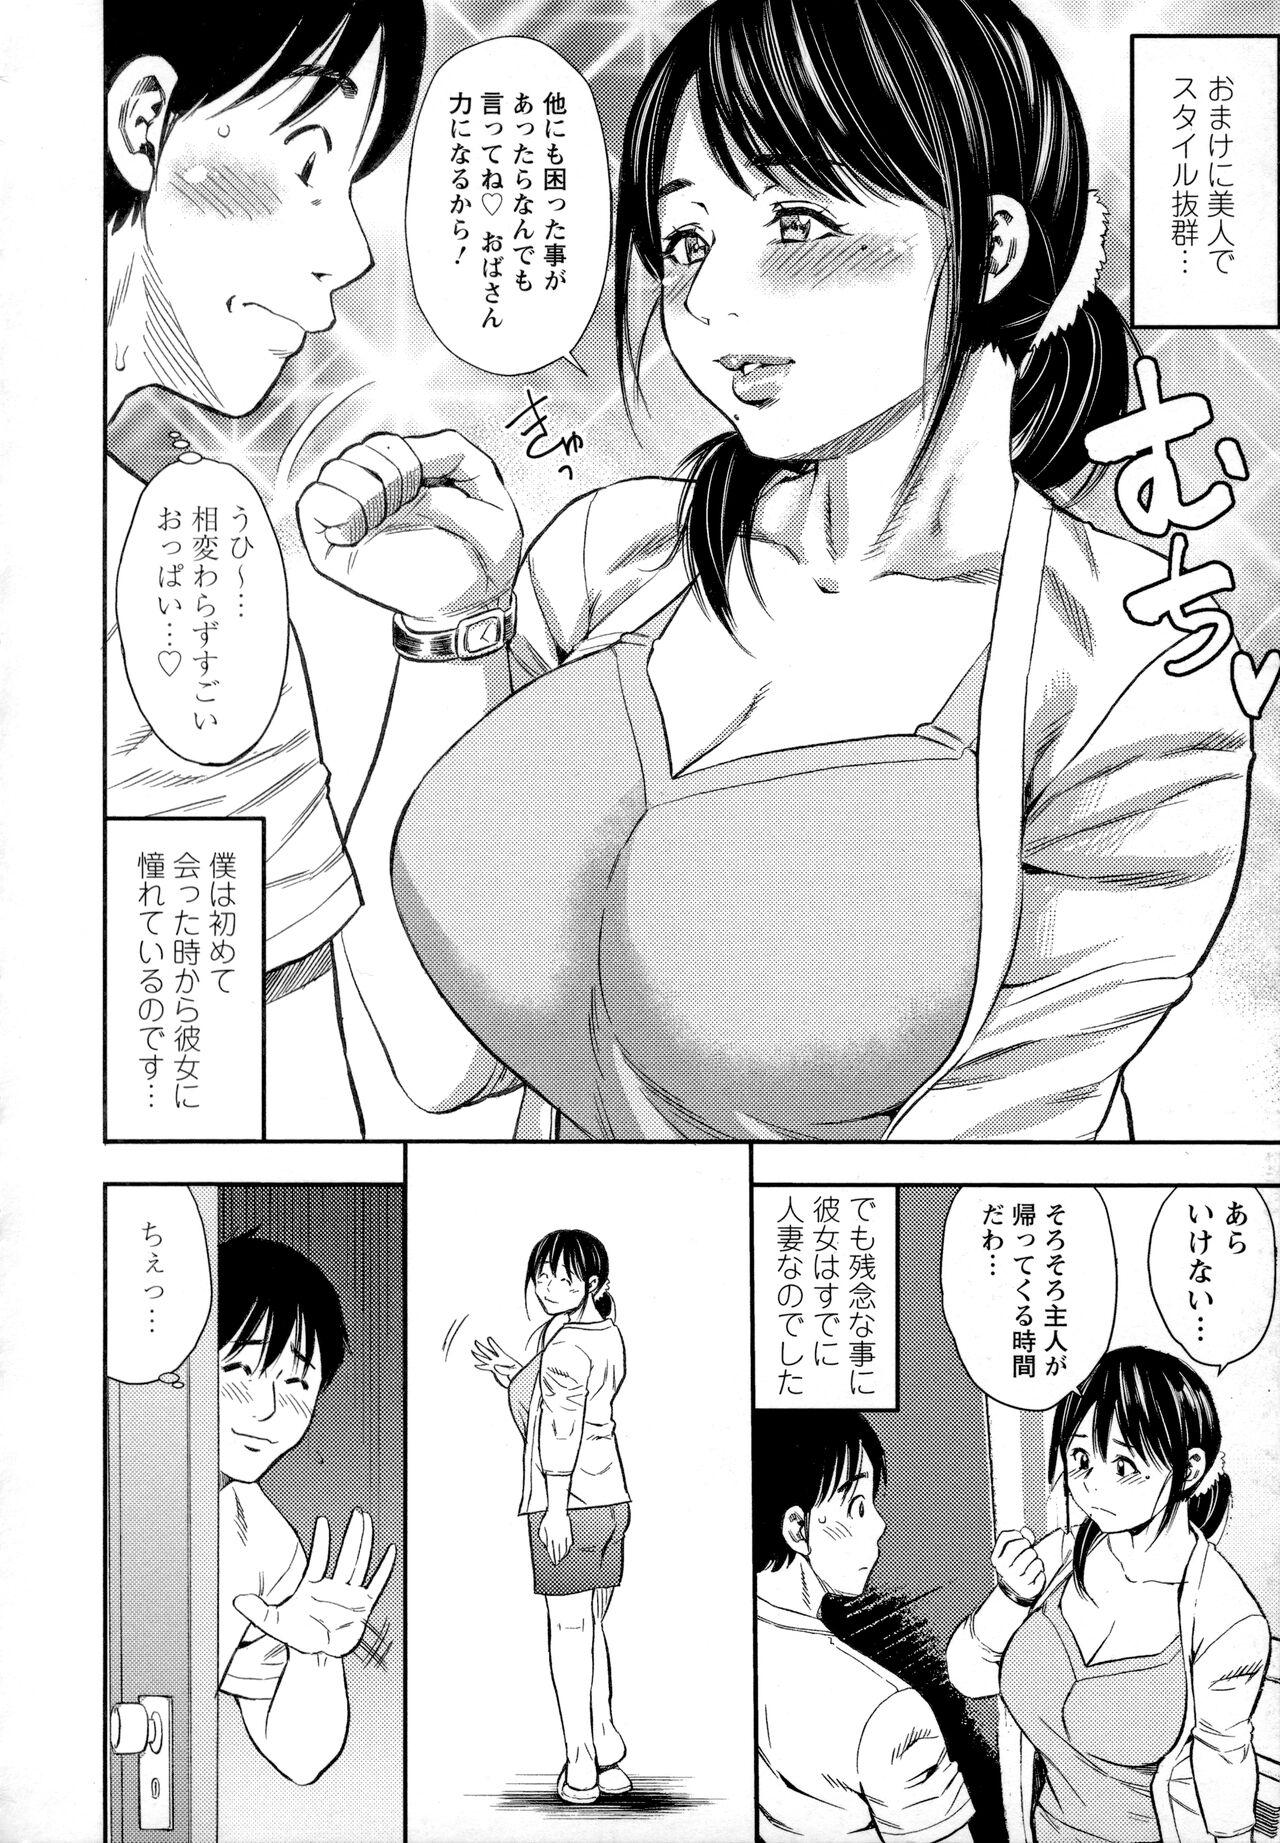 Sapphic Erotica Yoridori Tsumamigui Mature Woman - Page 3